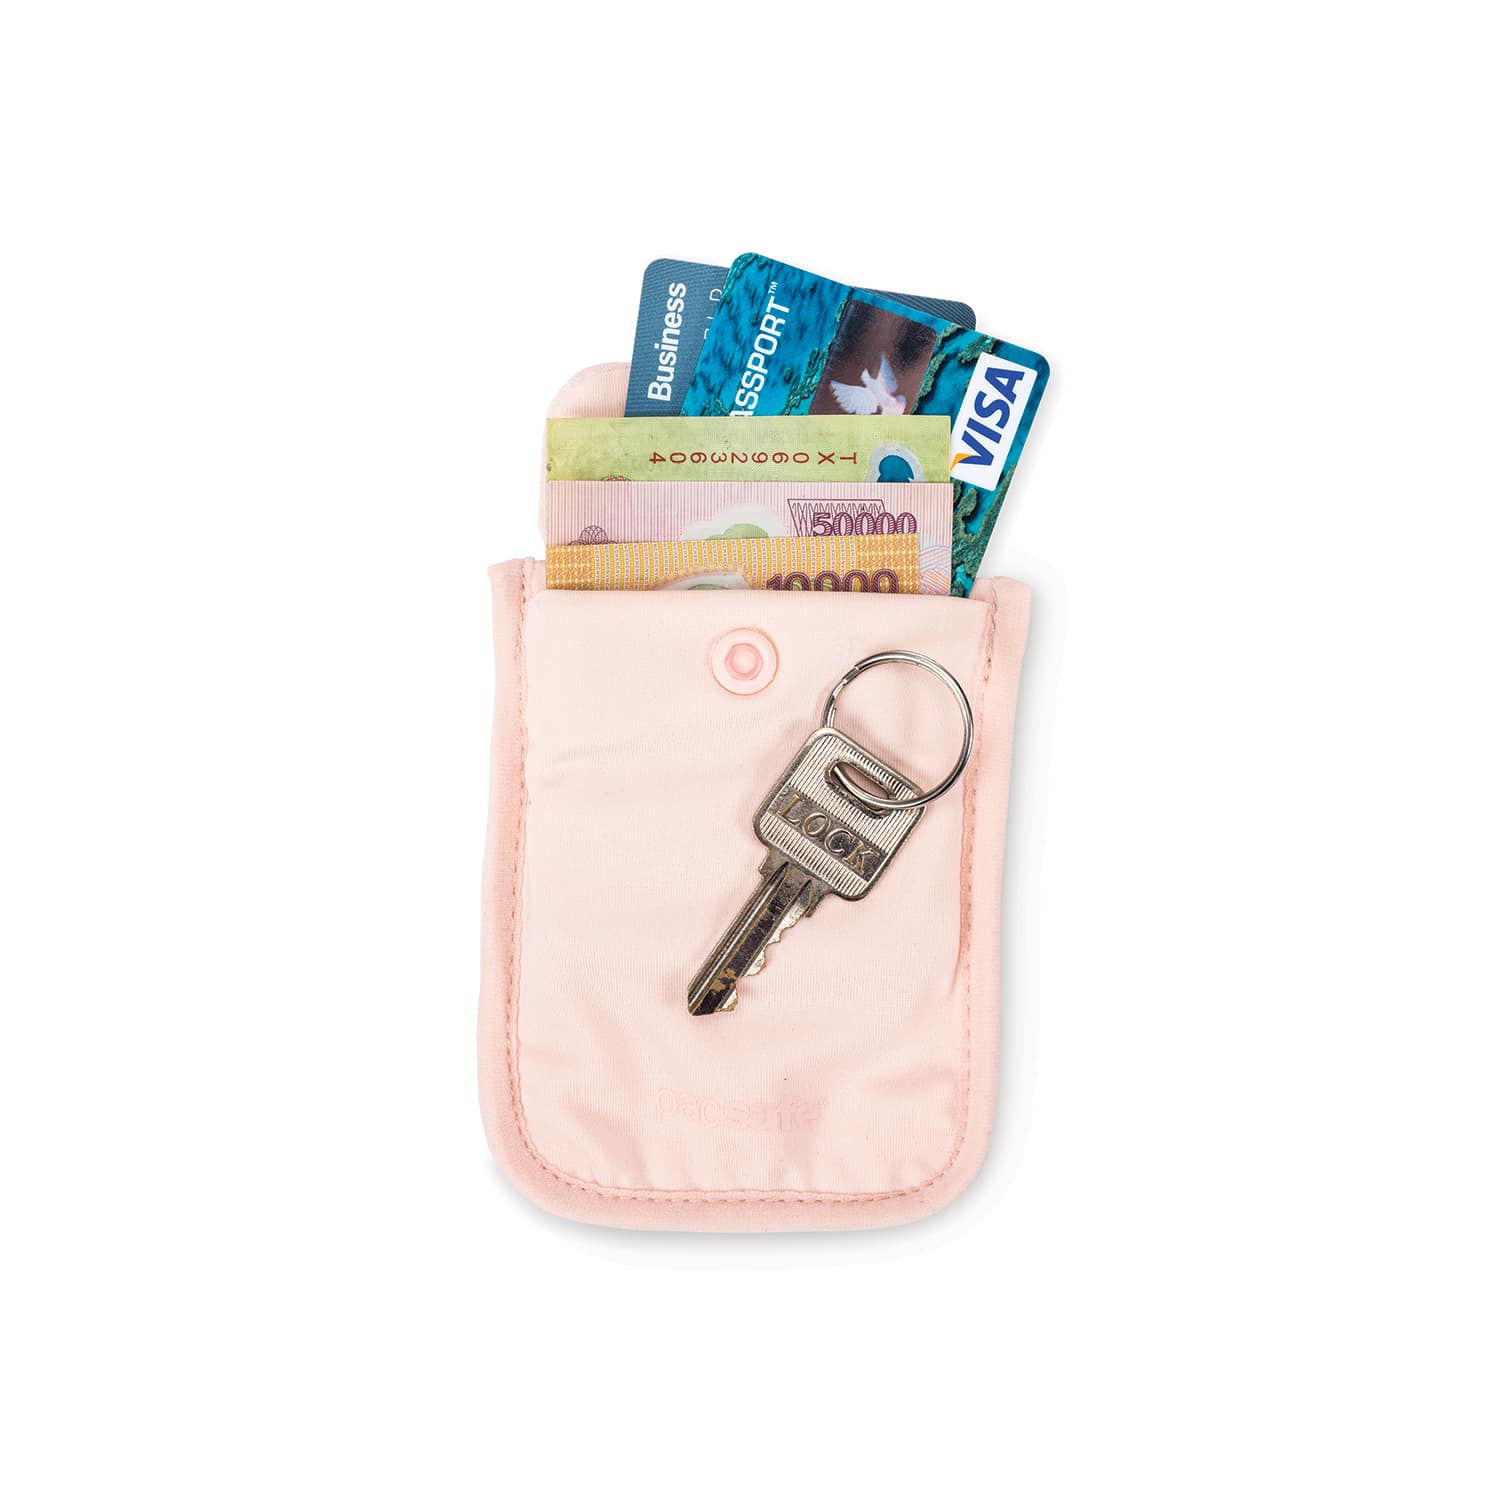 pacsafe Coversafe V60 RFID-blockierende geheime Gürtel-Geldtasche